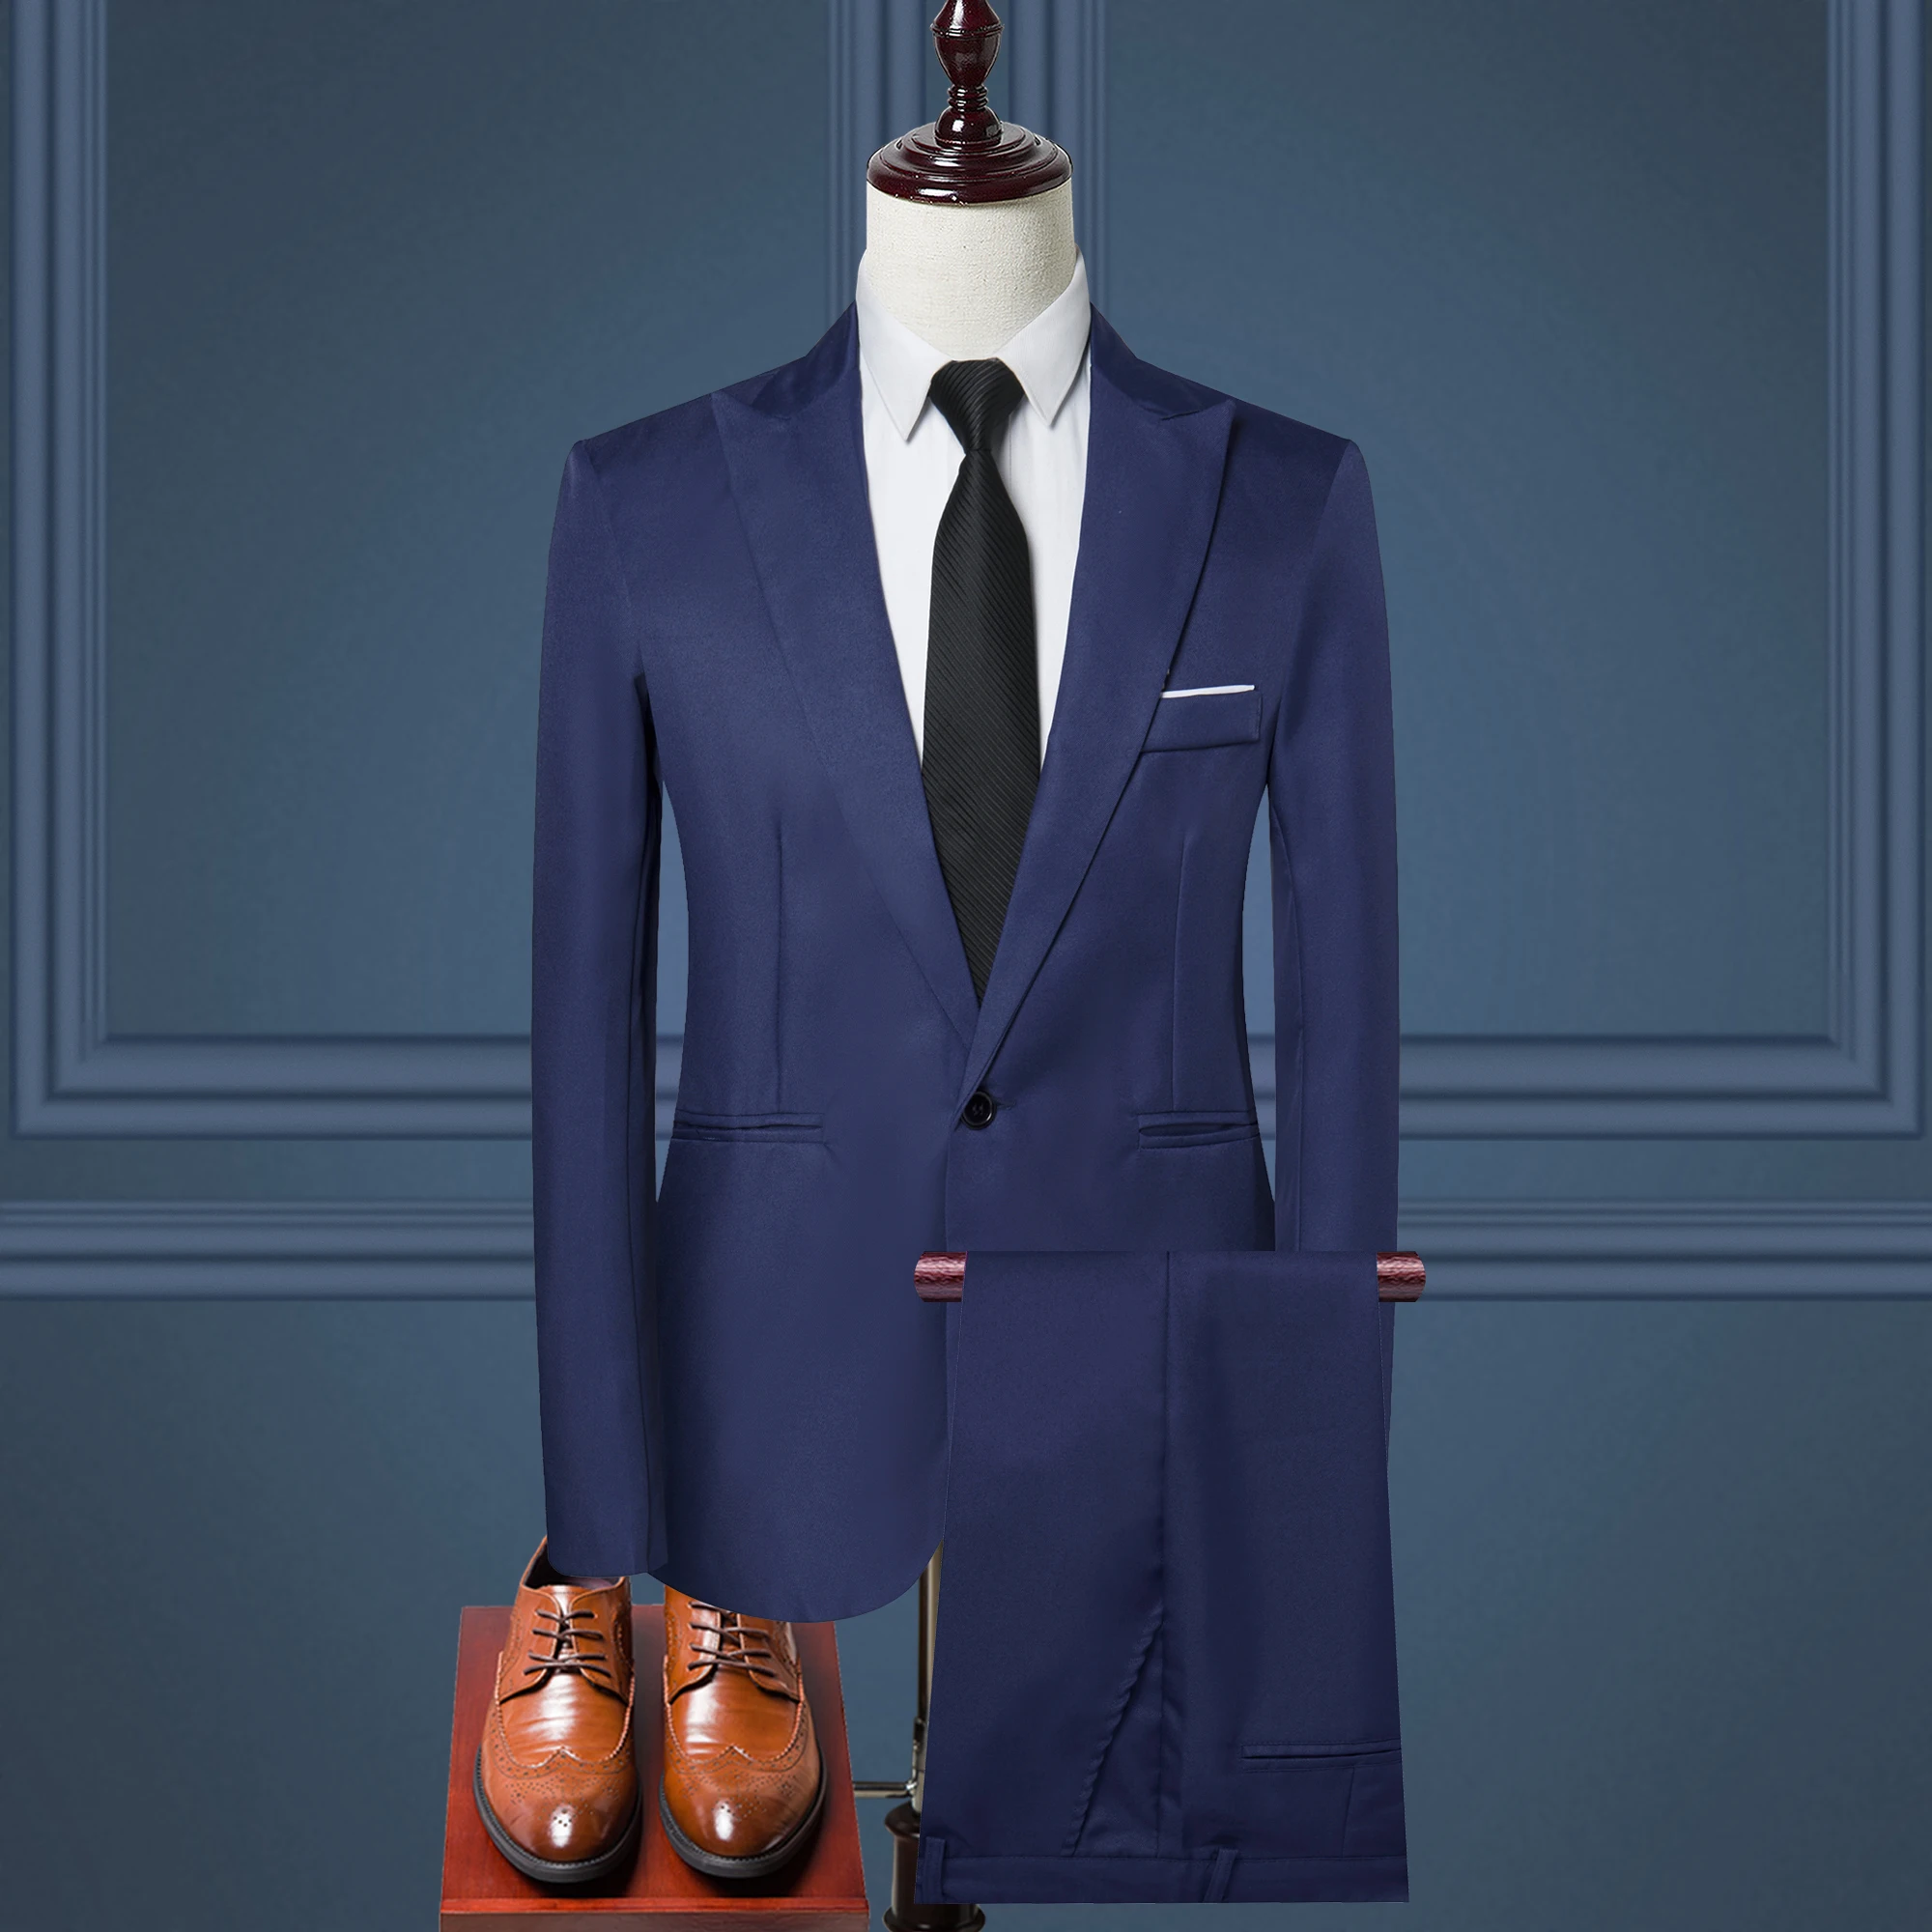 Supply Hot Sales Men's Suits & Blazer Women's Suits Men's Suits - Buy ...